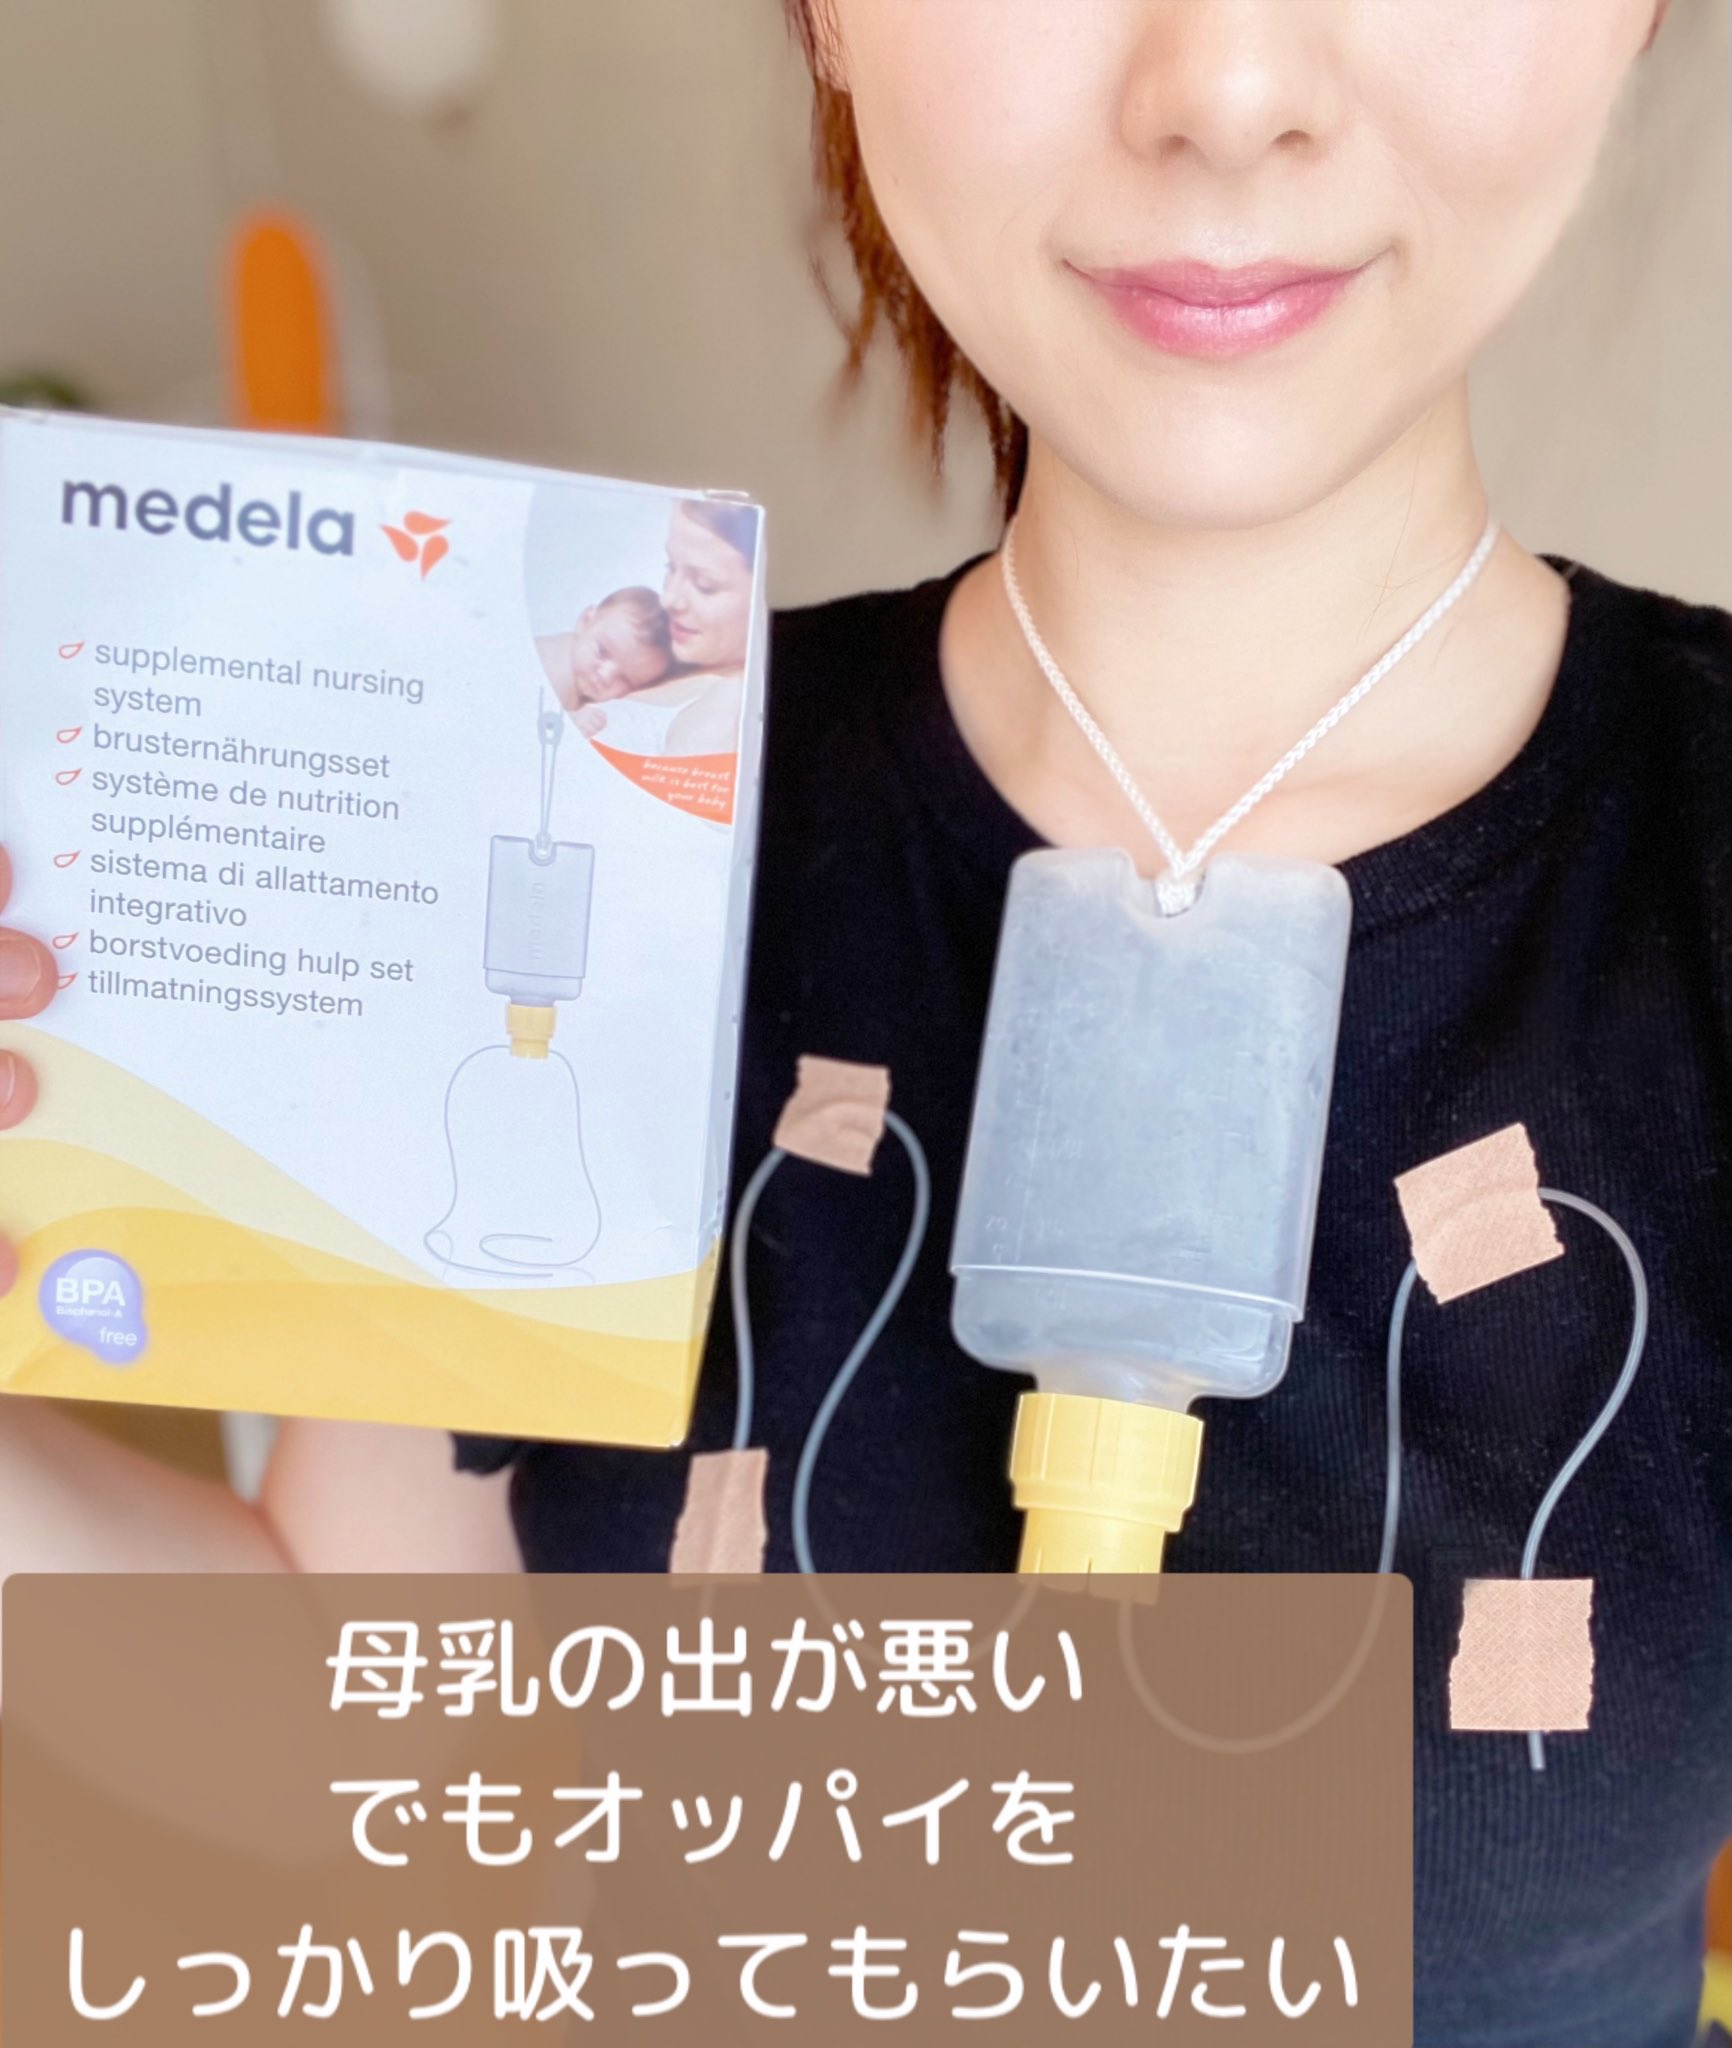 【新品チューブ付】 メデラ ナーシングサプリメンター SNS母乳哺育補助システム